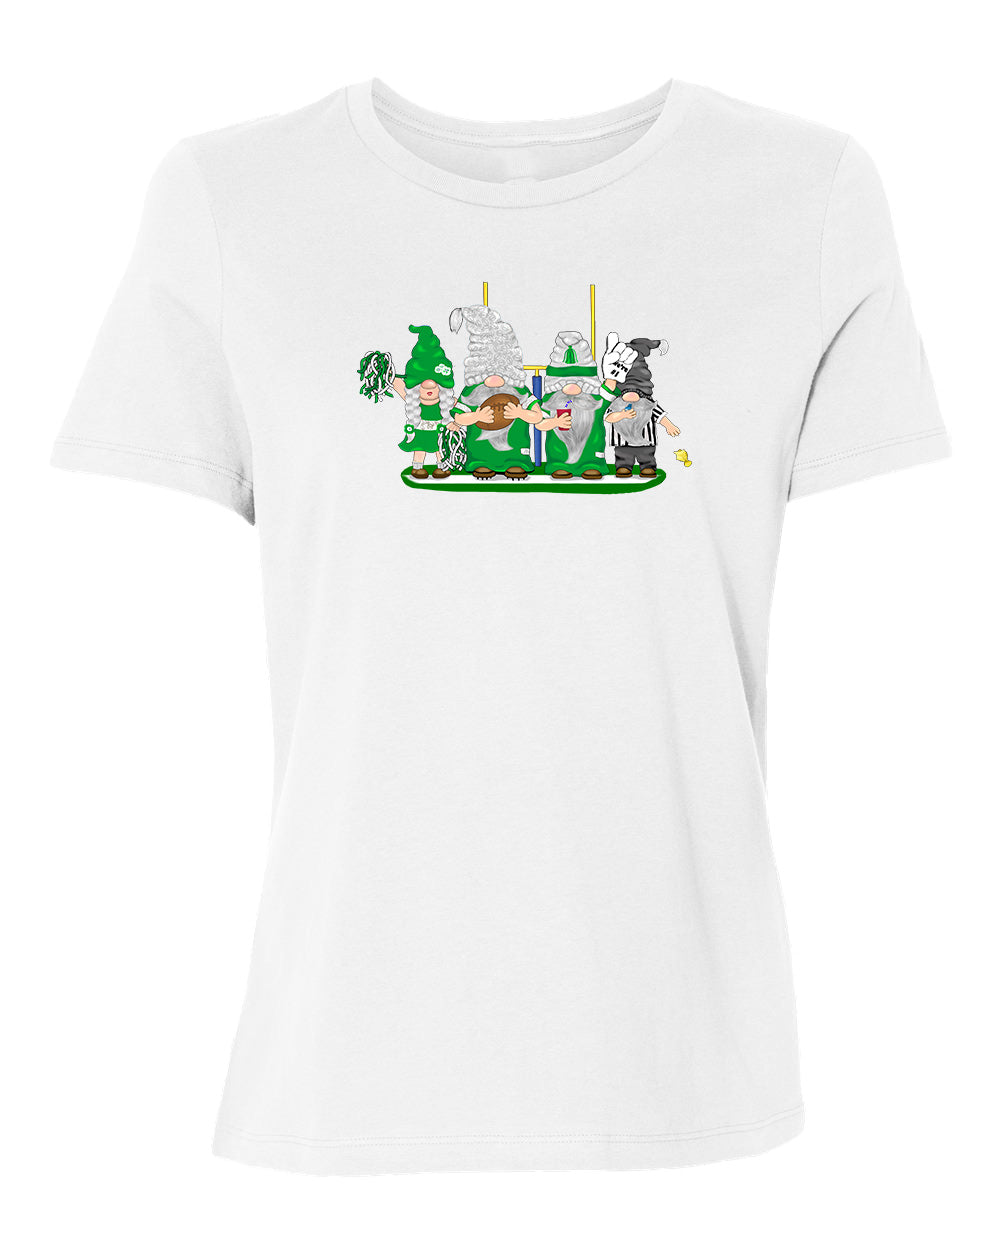 Green & White Football Gnomes on Women's T-shirt (similar to NY)